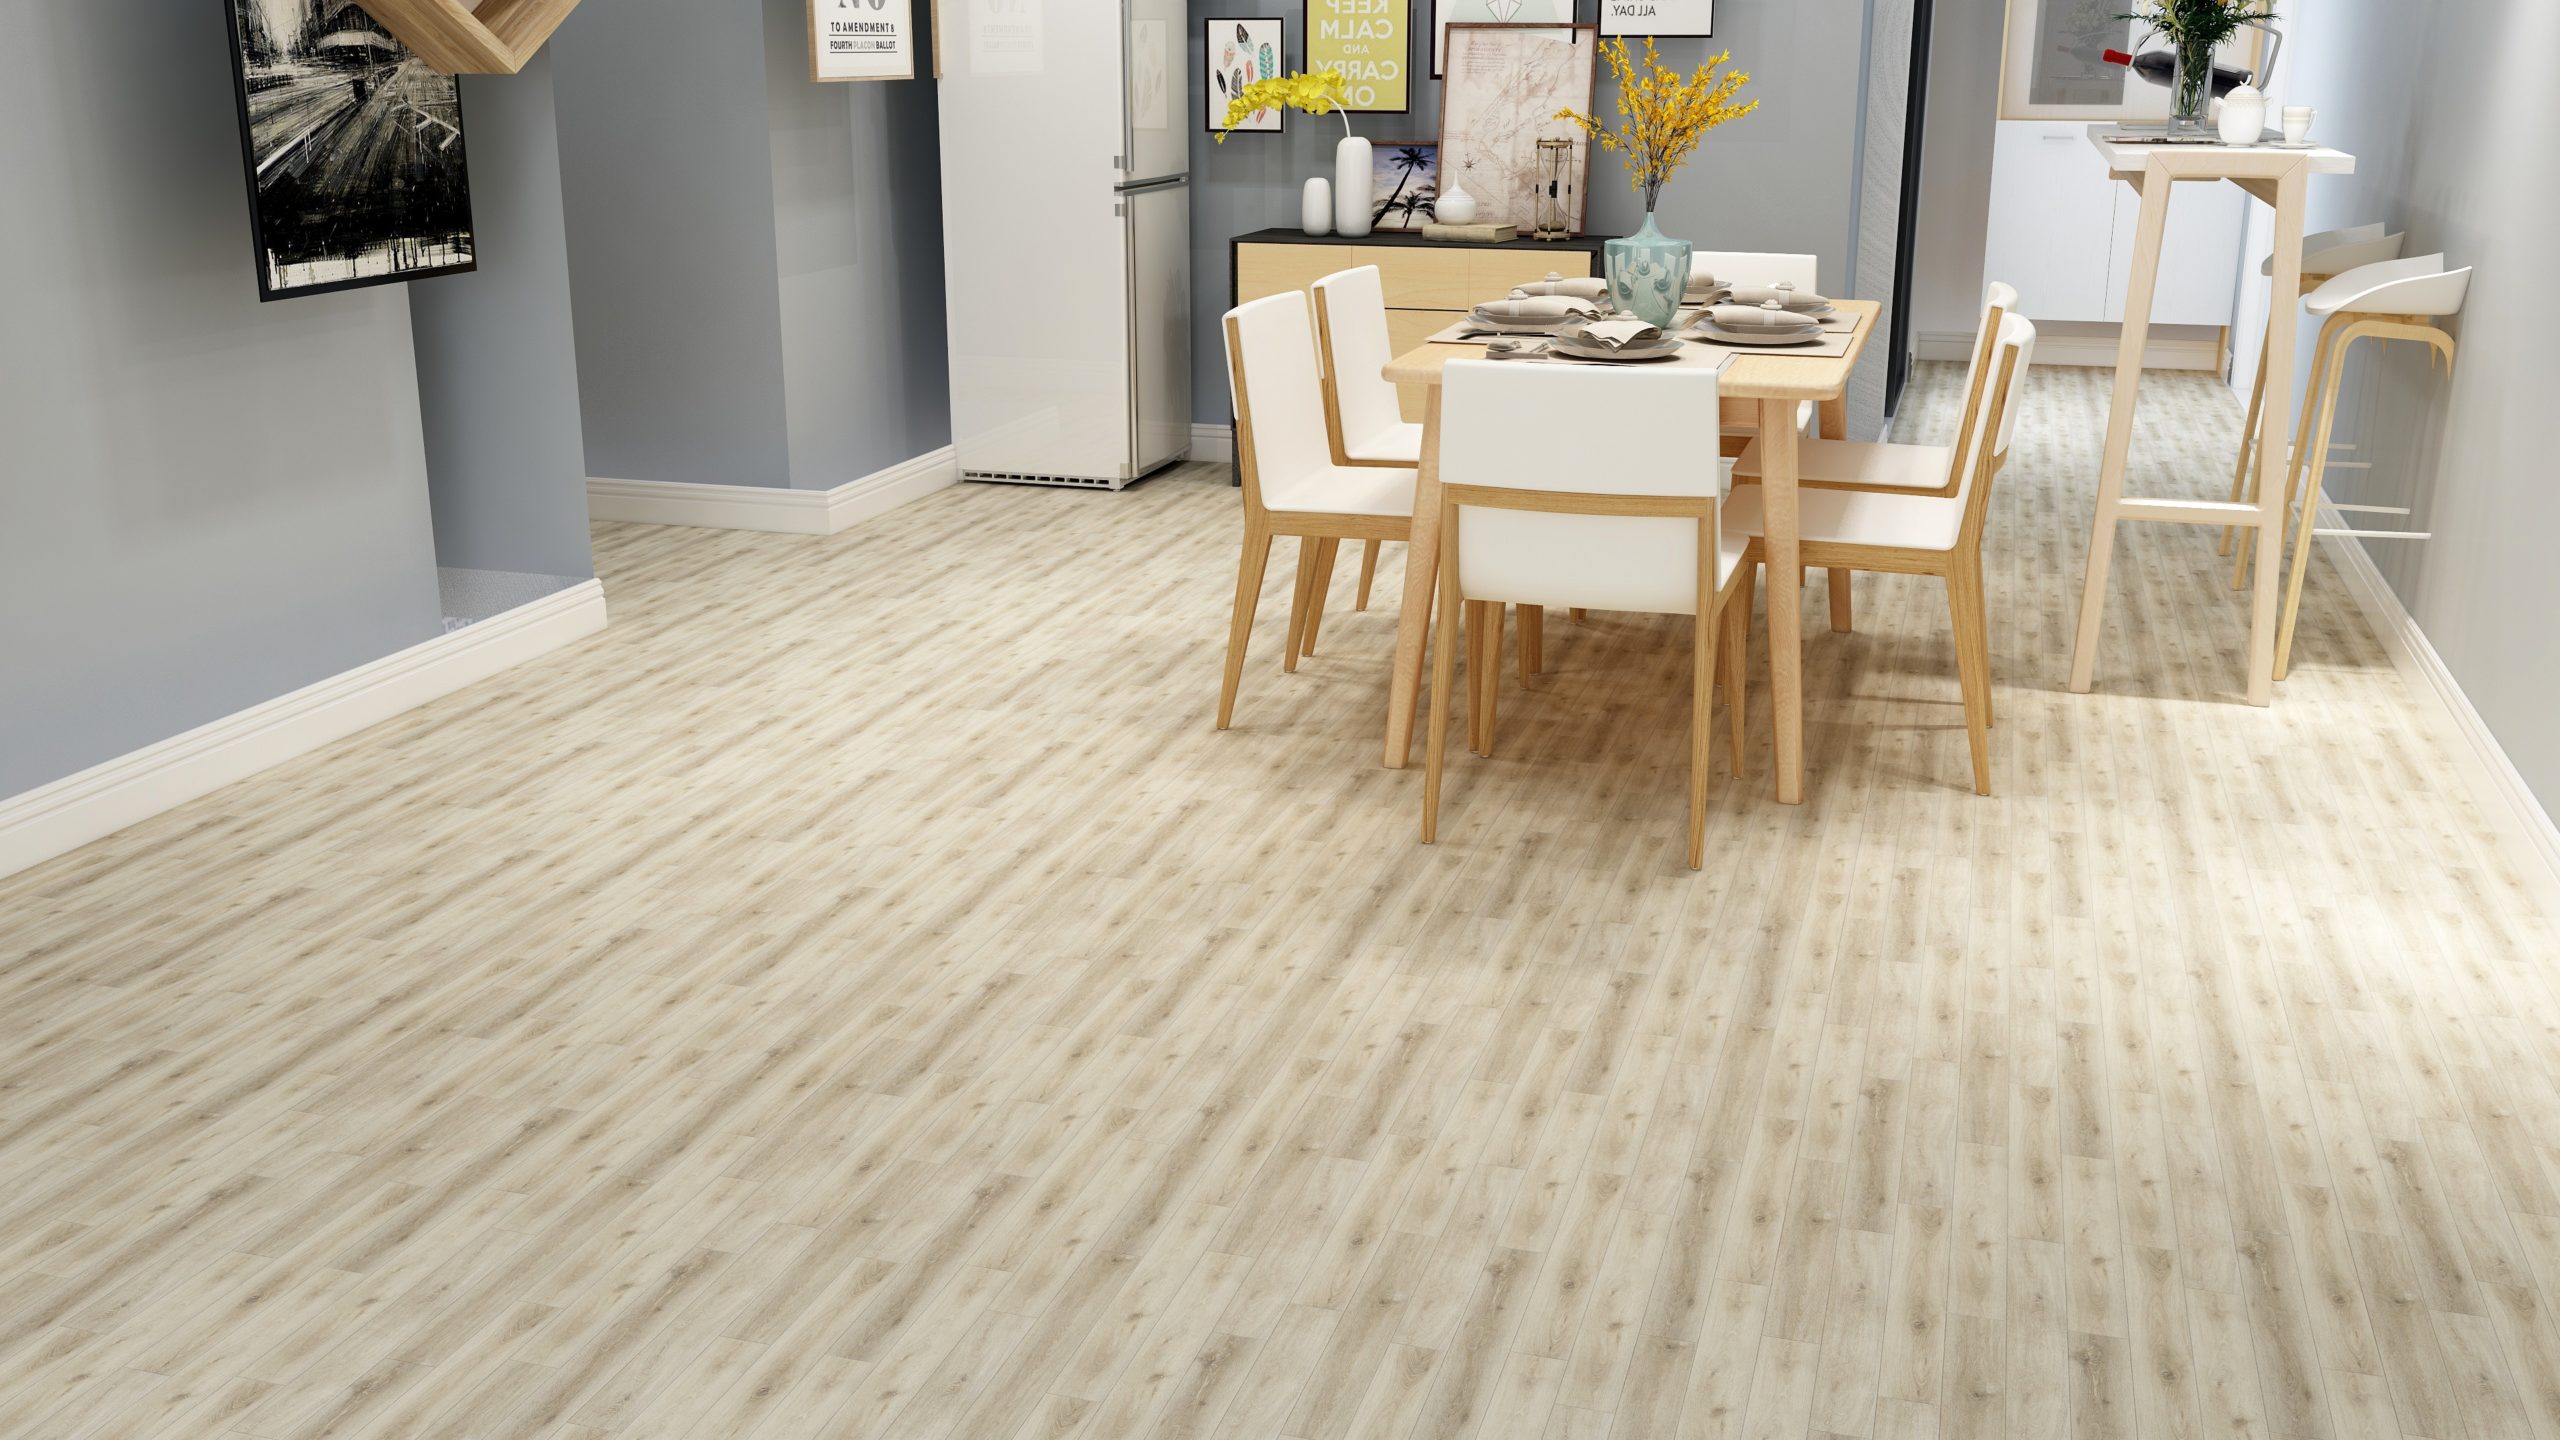 Is vinyl flooring cheaper than tile?